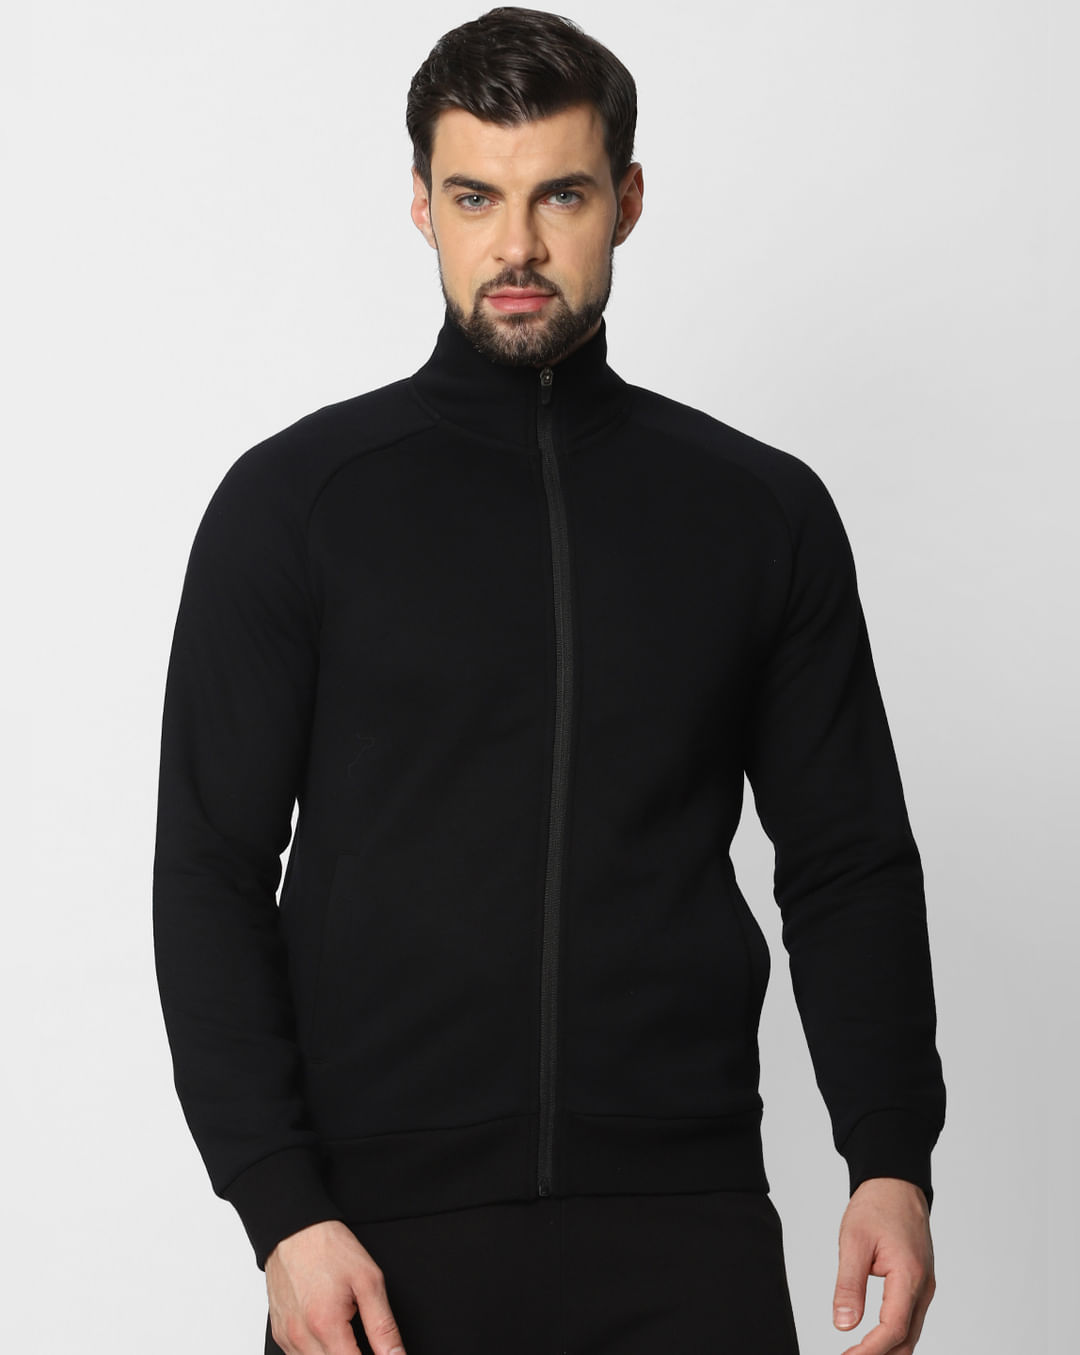 Buy Black Zip Up Sweatshirt Online in India - Flat 30% Off